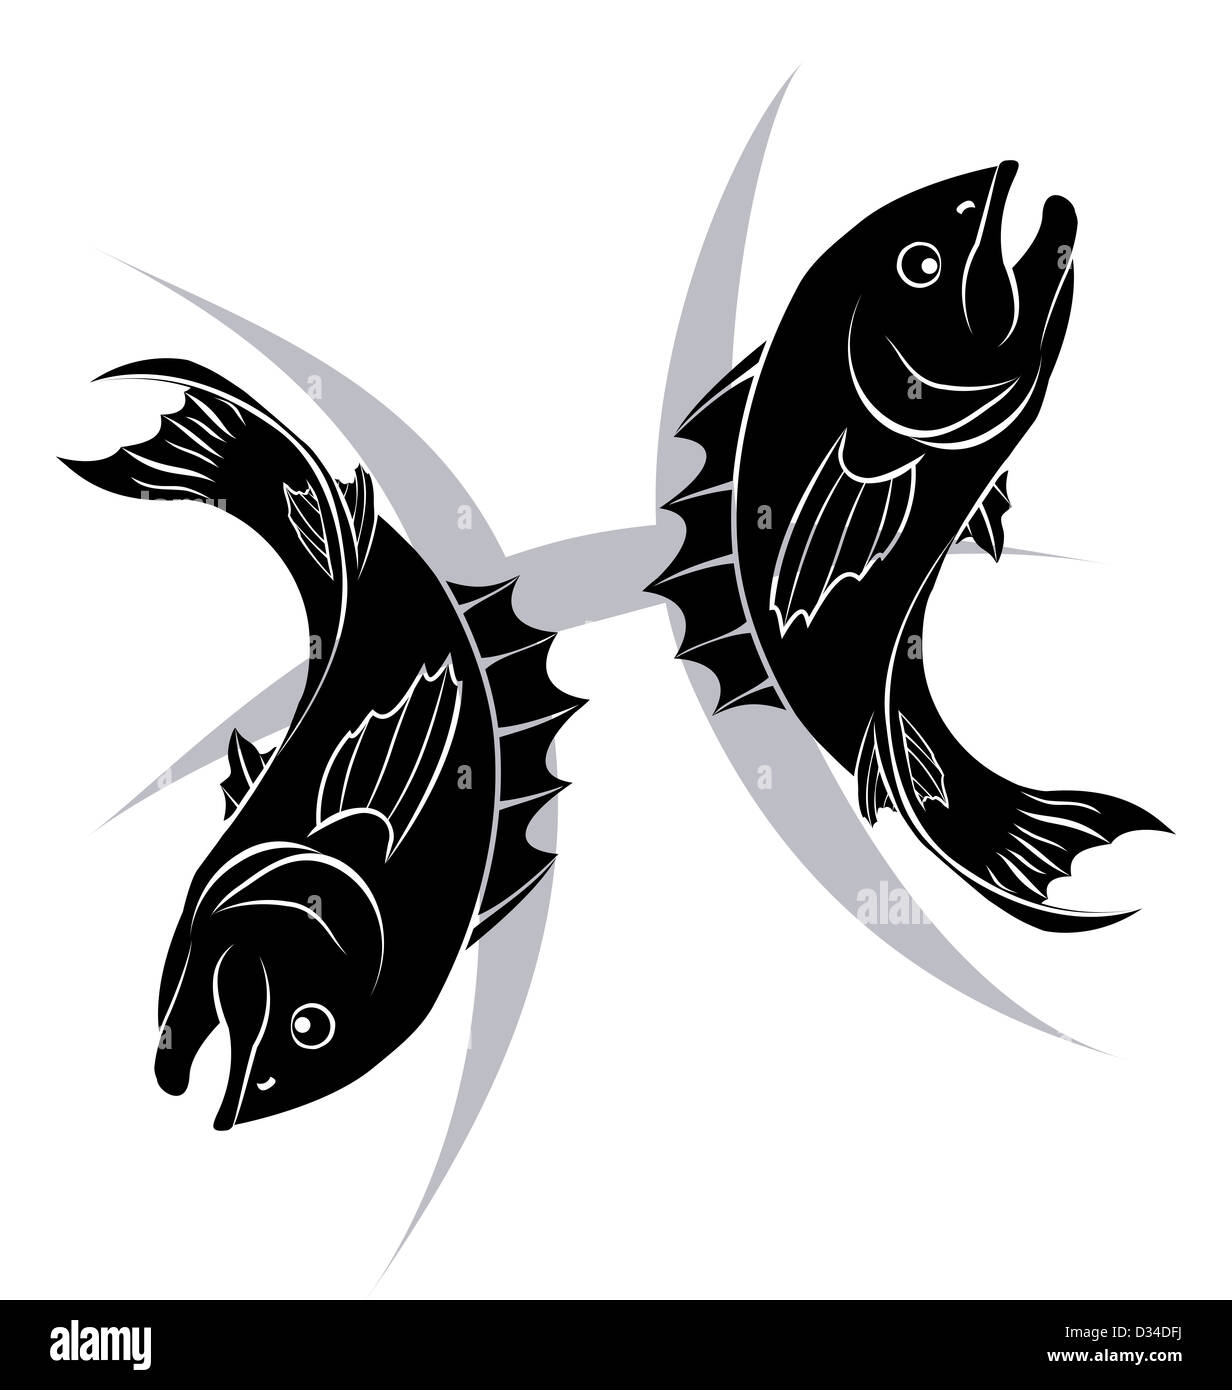 Abbildung der Fische Fisch Sternzeichen Horoskop Astrologie unterzeichnen  Stockfotografie - Alamy